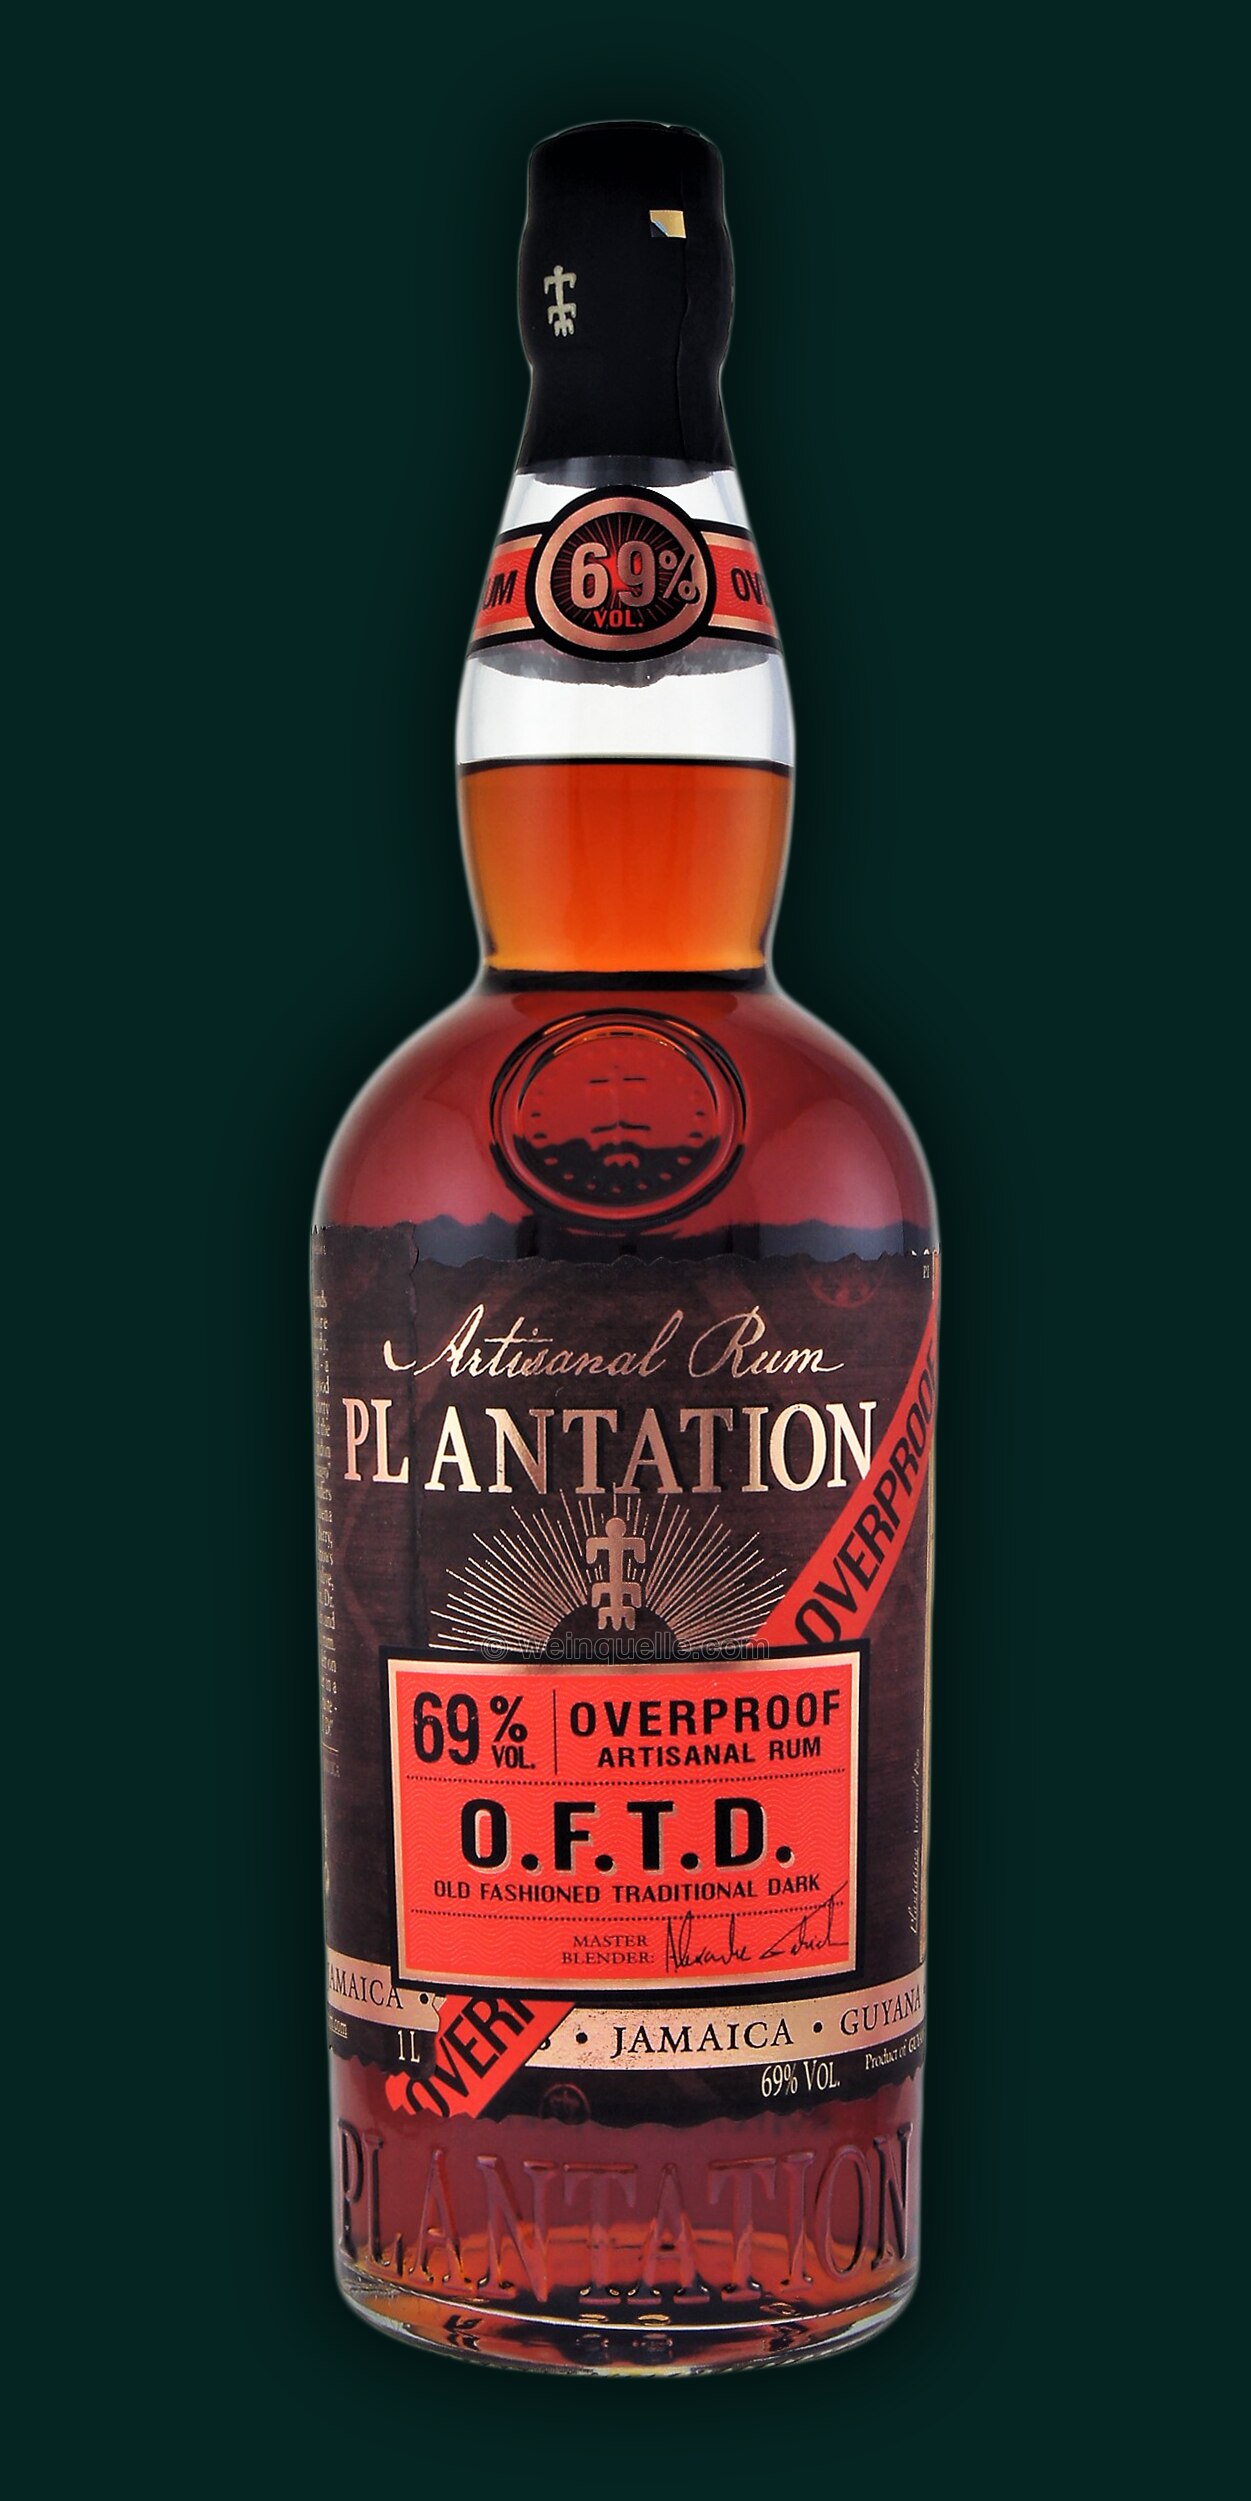 Plantation O.F.T.D. 34,50 - 1,0 69% Rum Liter, Weinquelle Dark Overproof Lühmann €